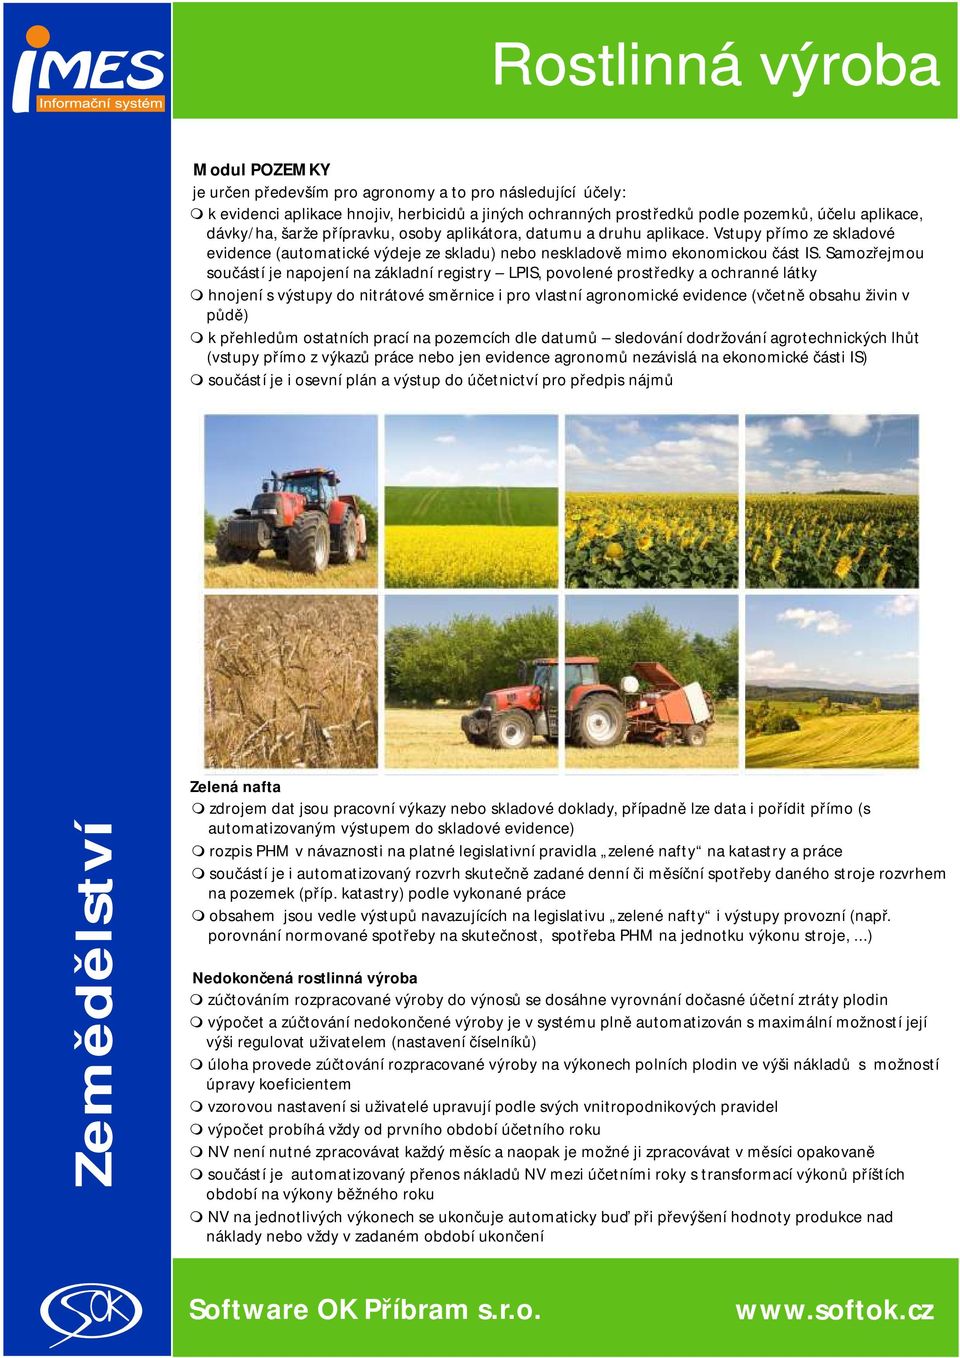 Saozřejou součástí je napojení na základní registry LPIS, povolené prostředky a ochranné látky hnojení s výstupy do nitrátové sěrnice i pro vlastní agronoické evidence (včetně obsahu živin v půdě) k